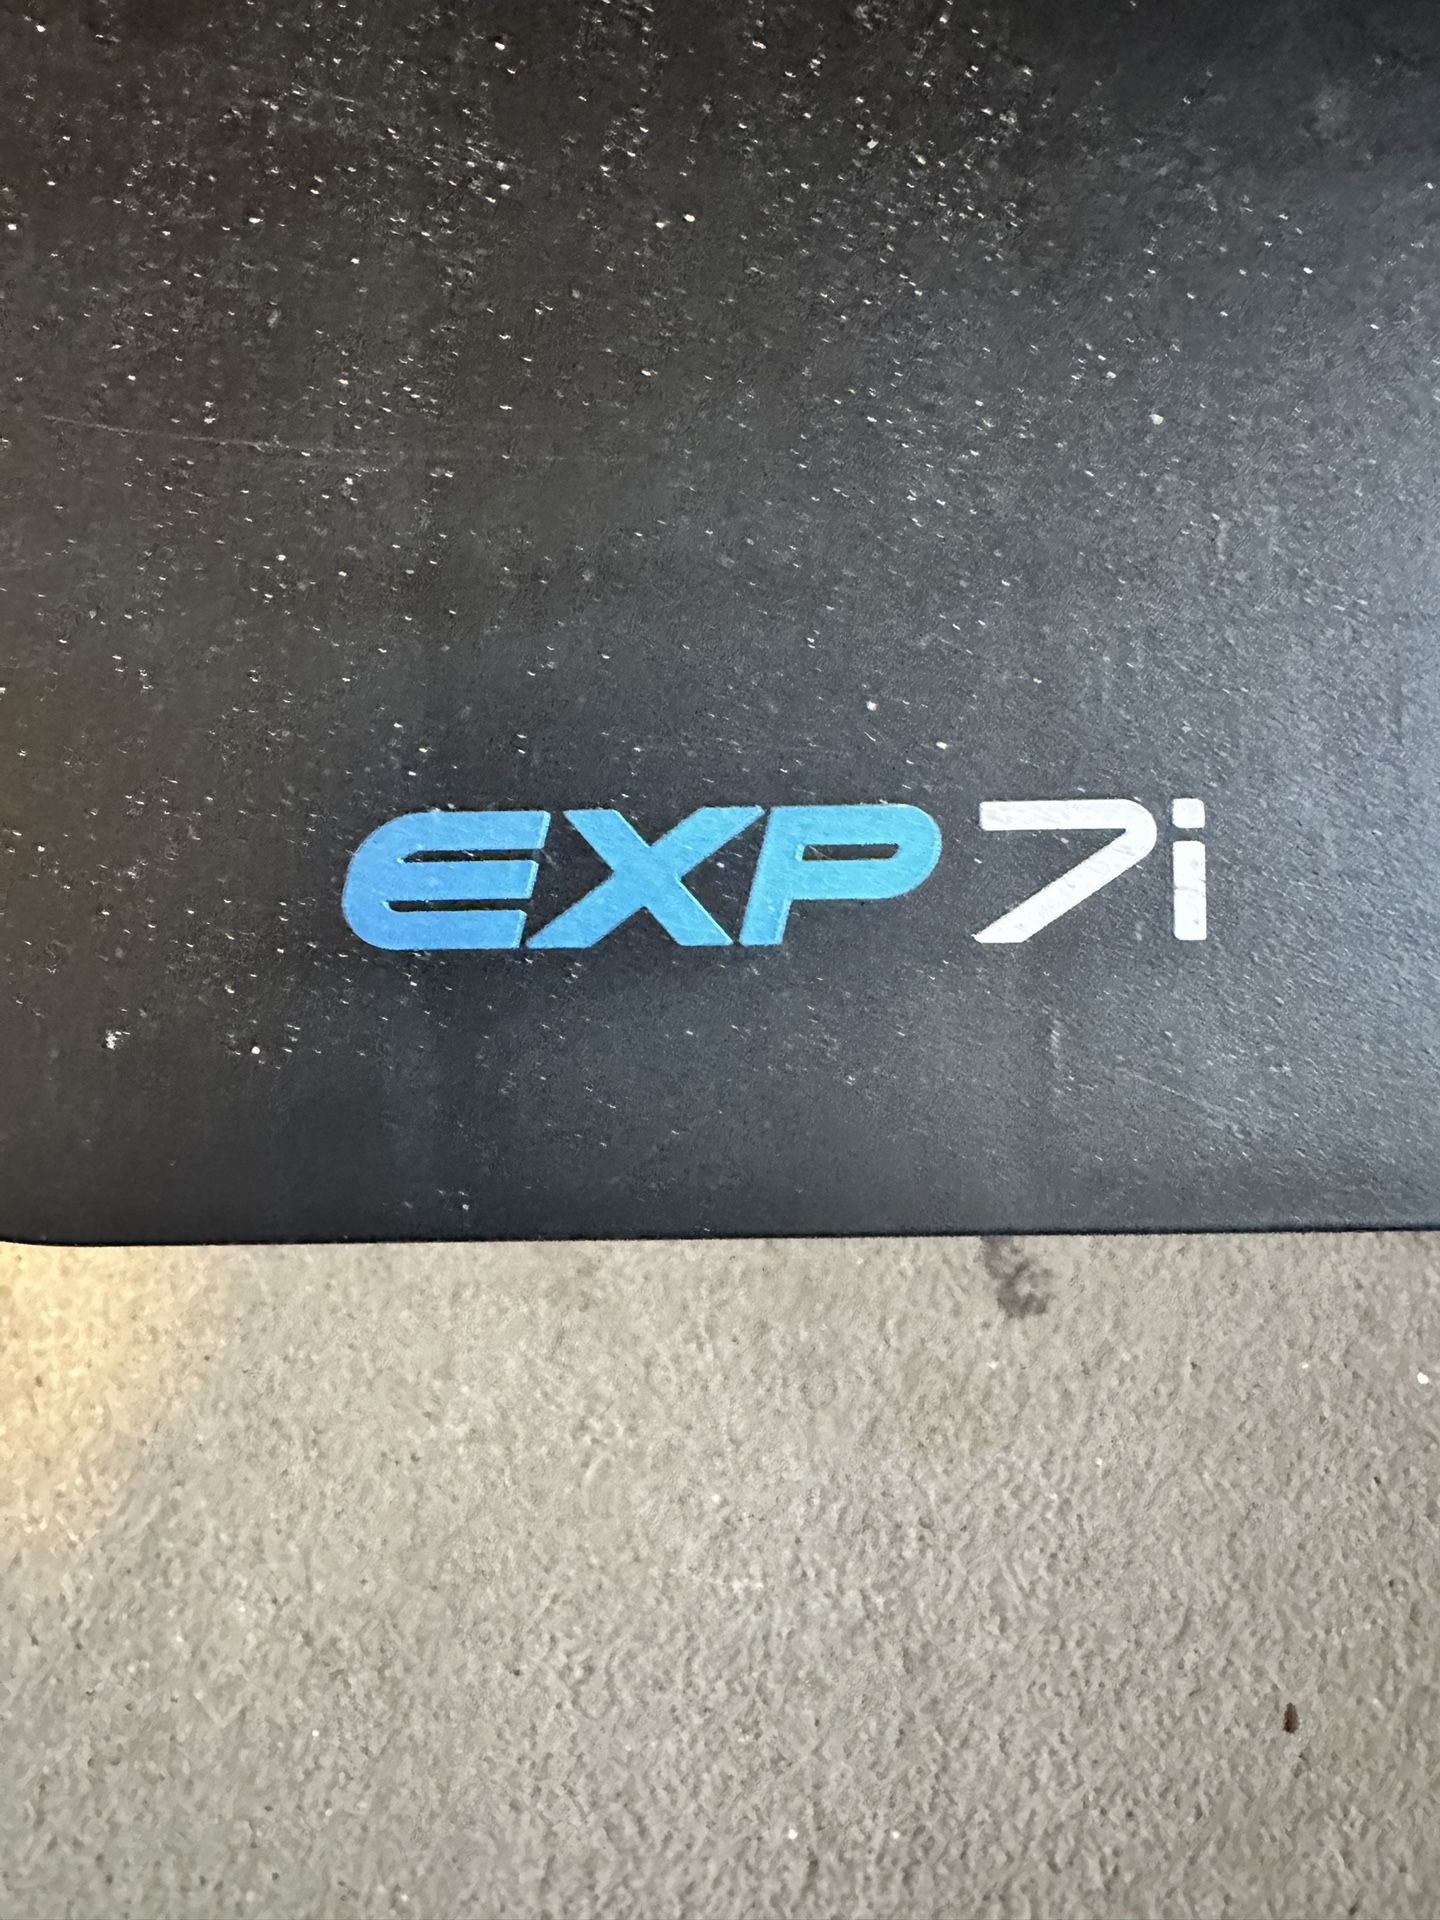 NordicTrack Treadmill Exp7i